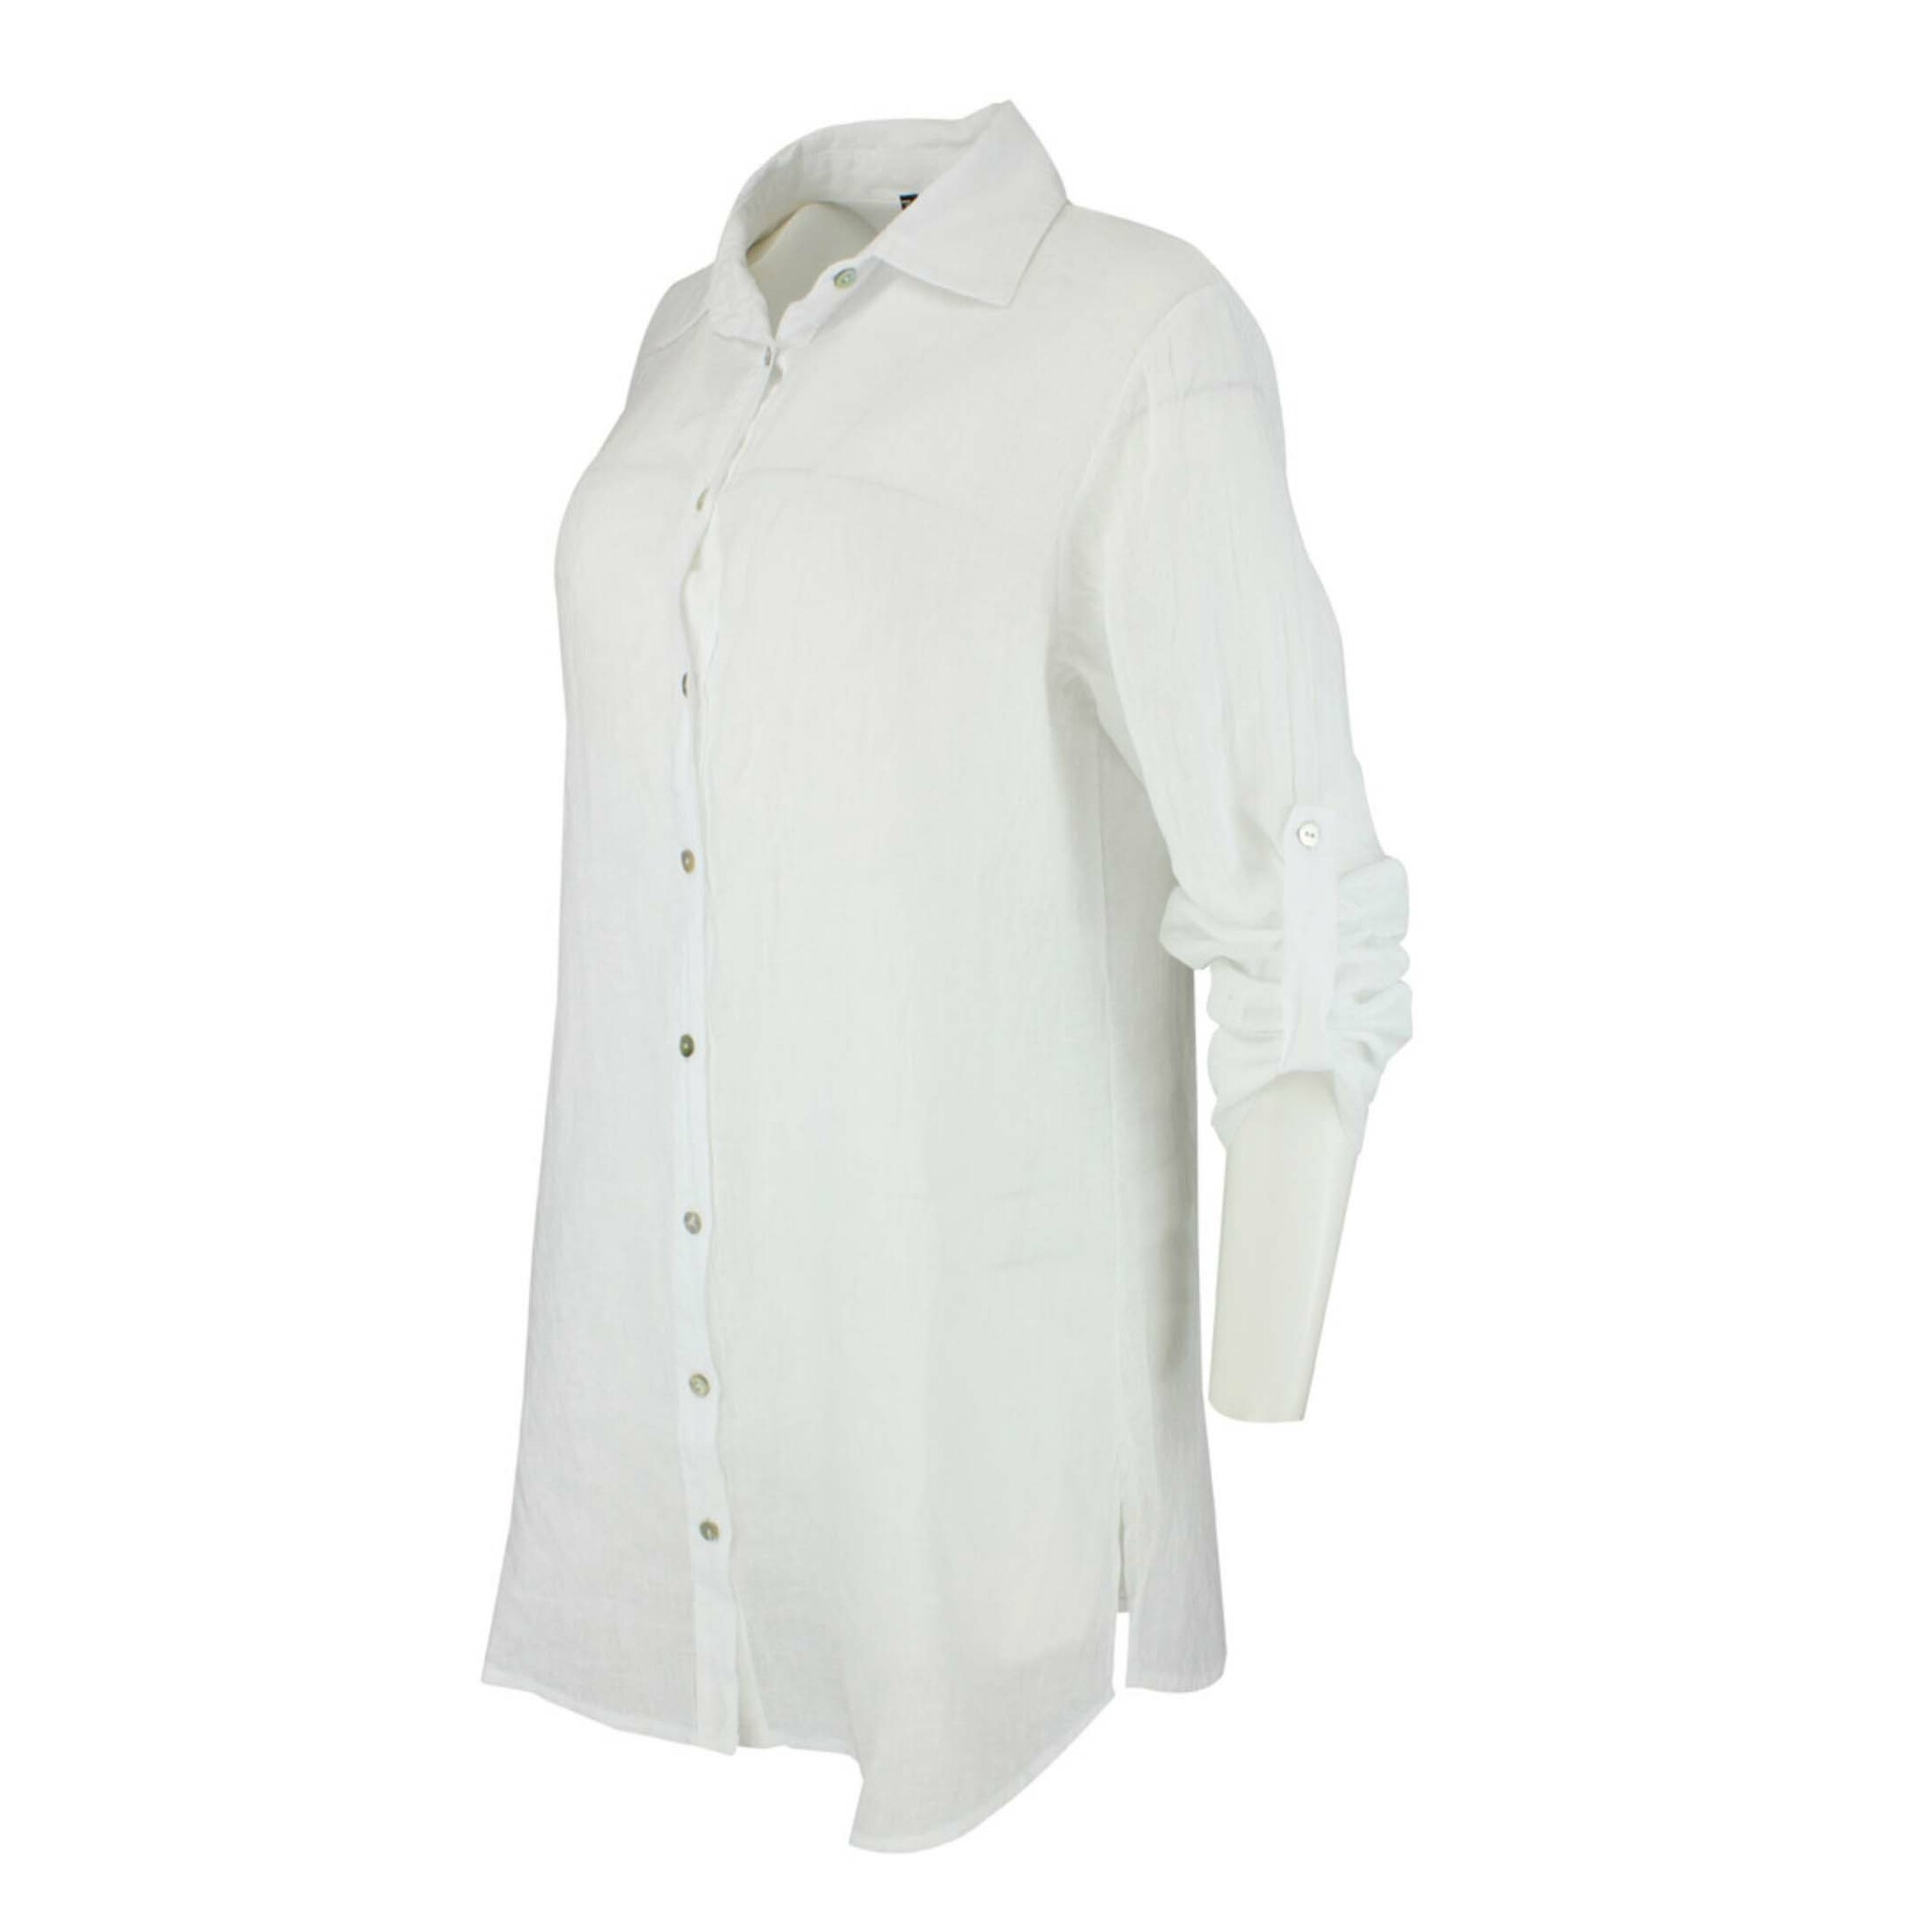 Bohéme skjorte - farge hvit